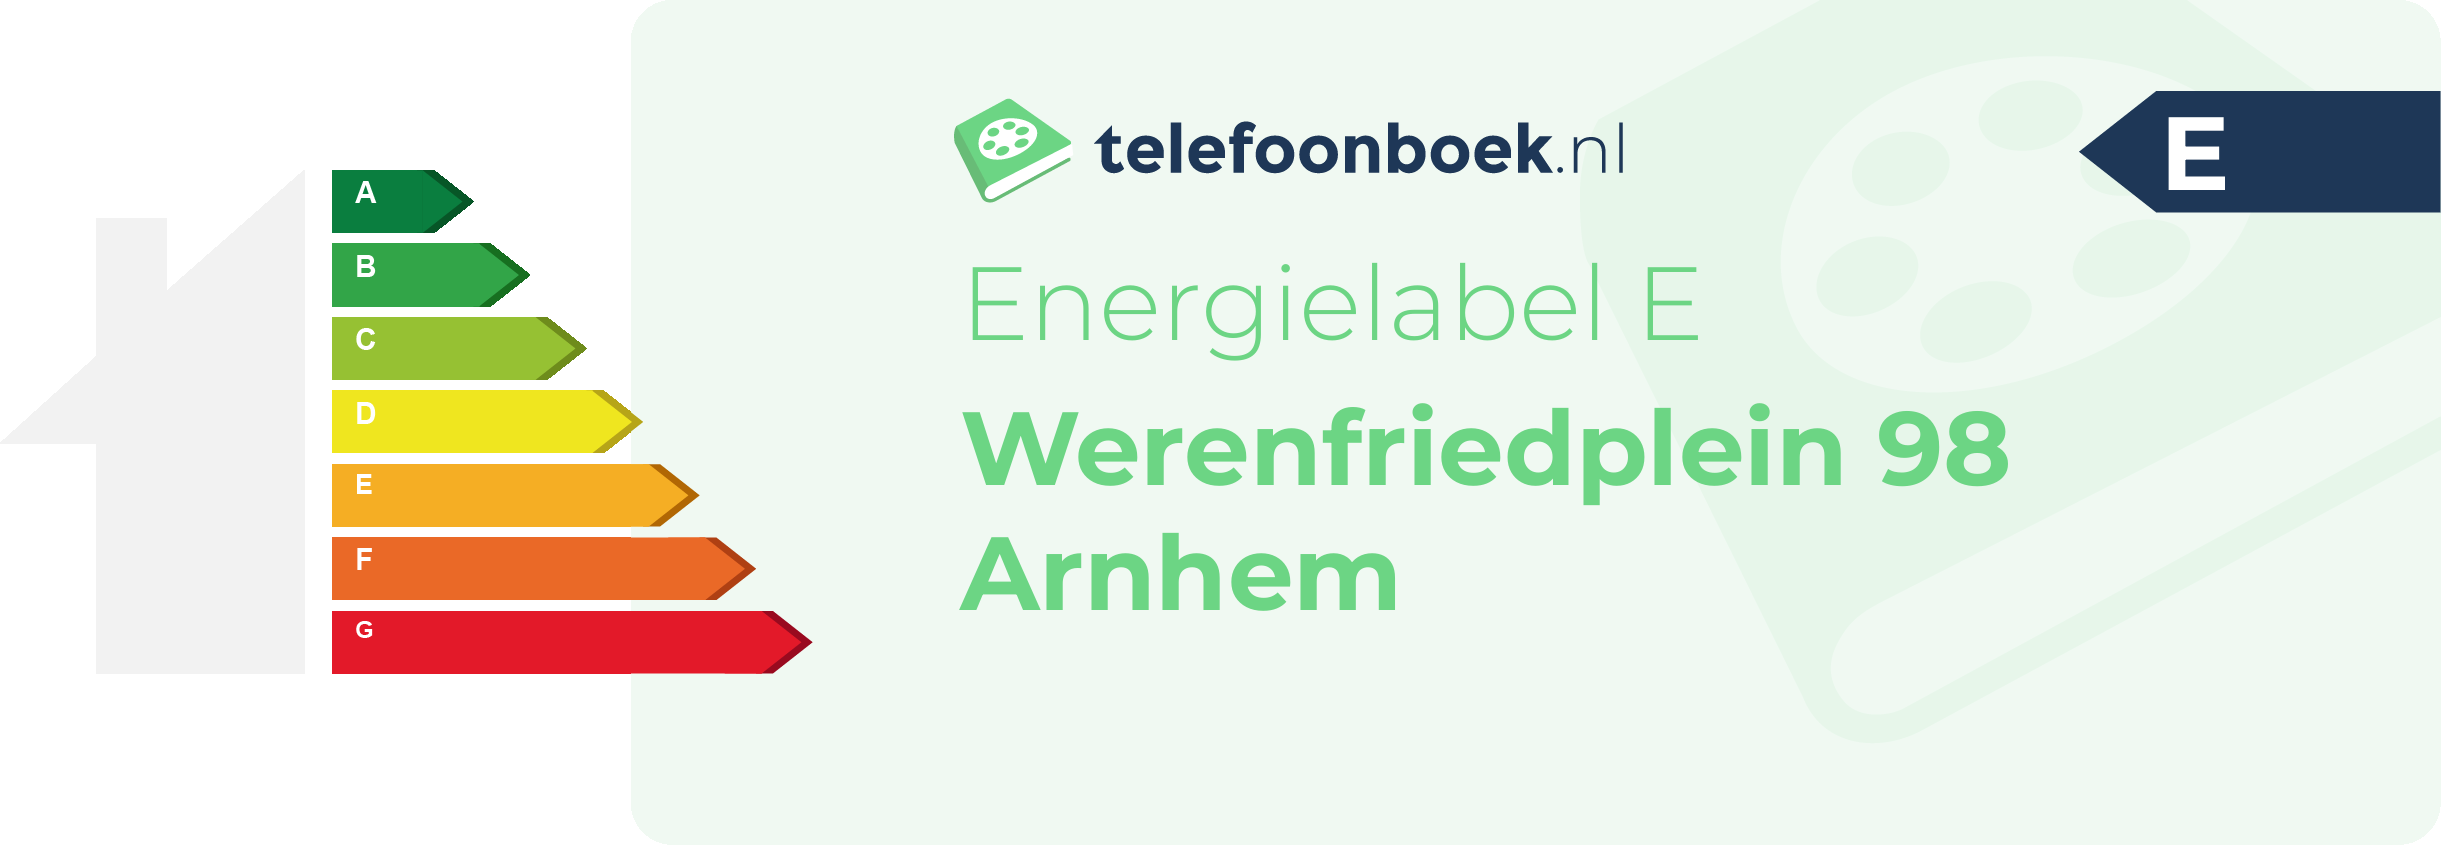 Energielabel Werenfriedplein 98 Arnhem